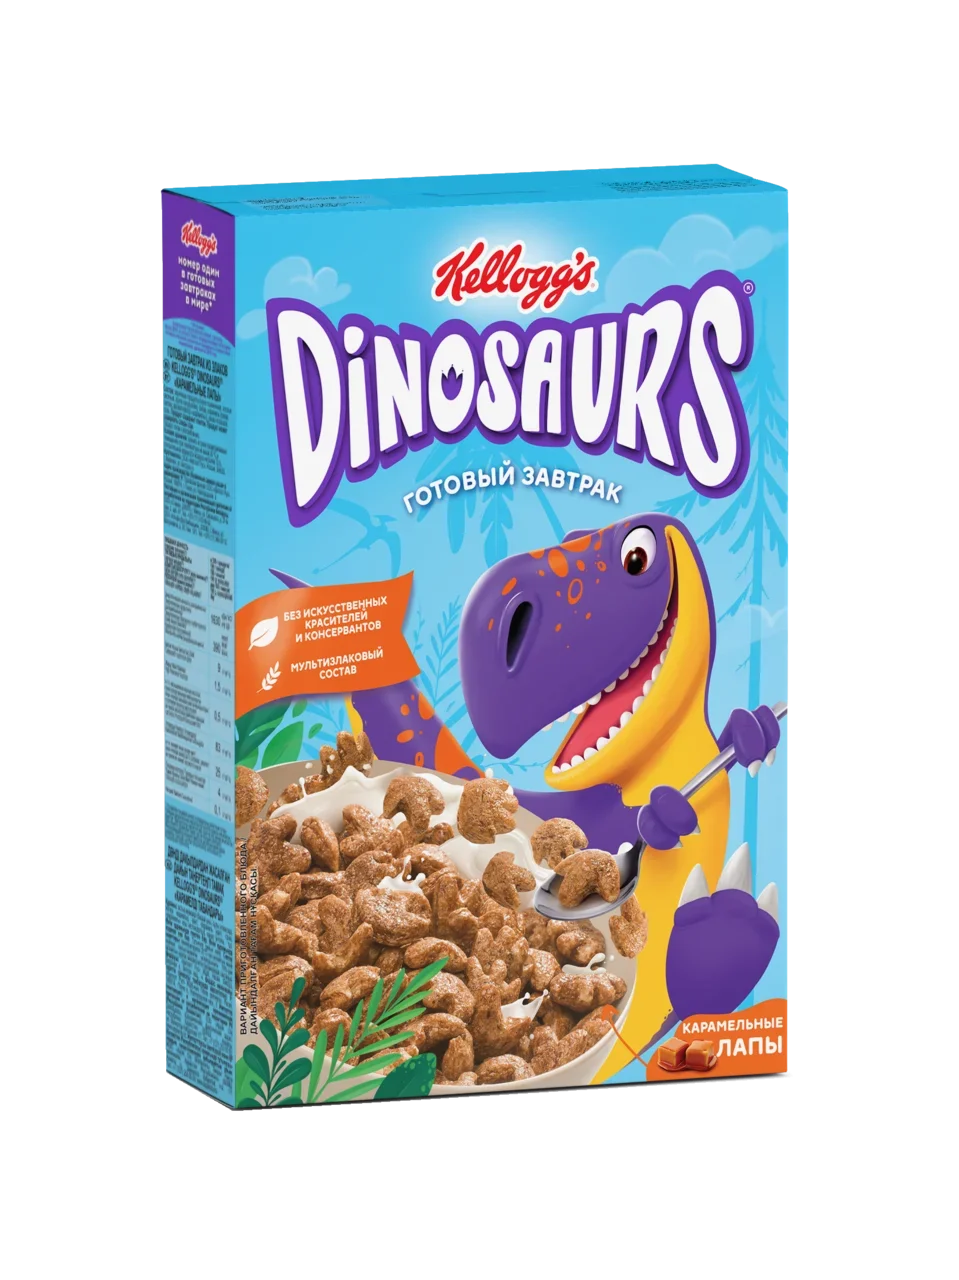 Готовый завтрак Динозавры шоколадные лапы и клыки 220 г